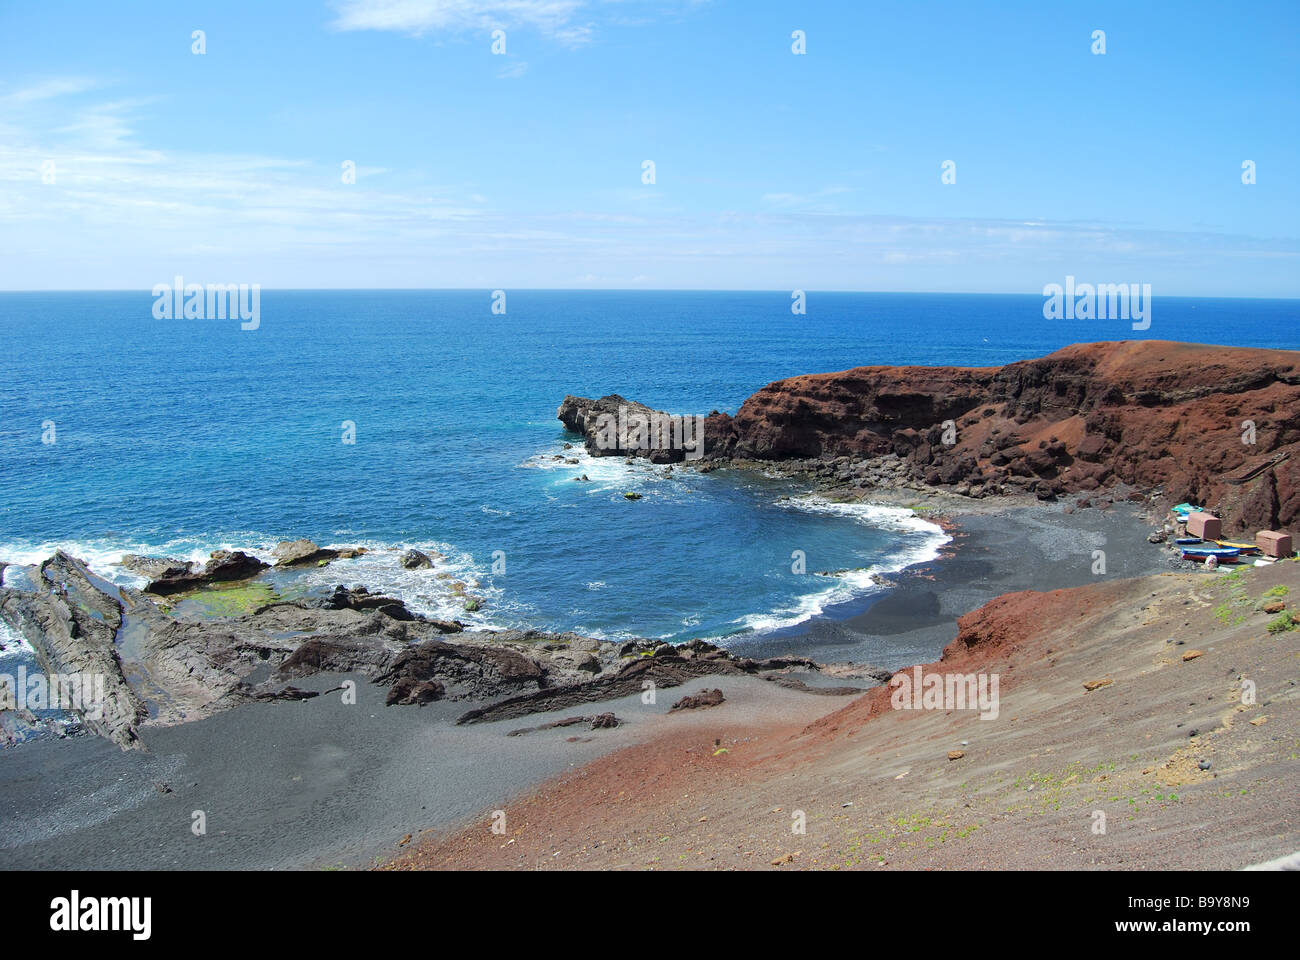 Rugged coastline, El Golfo, Lanzarote, Canary Islands, Spain Stock Photo